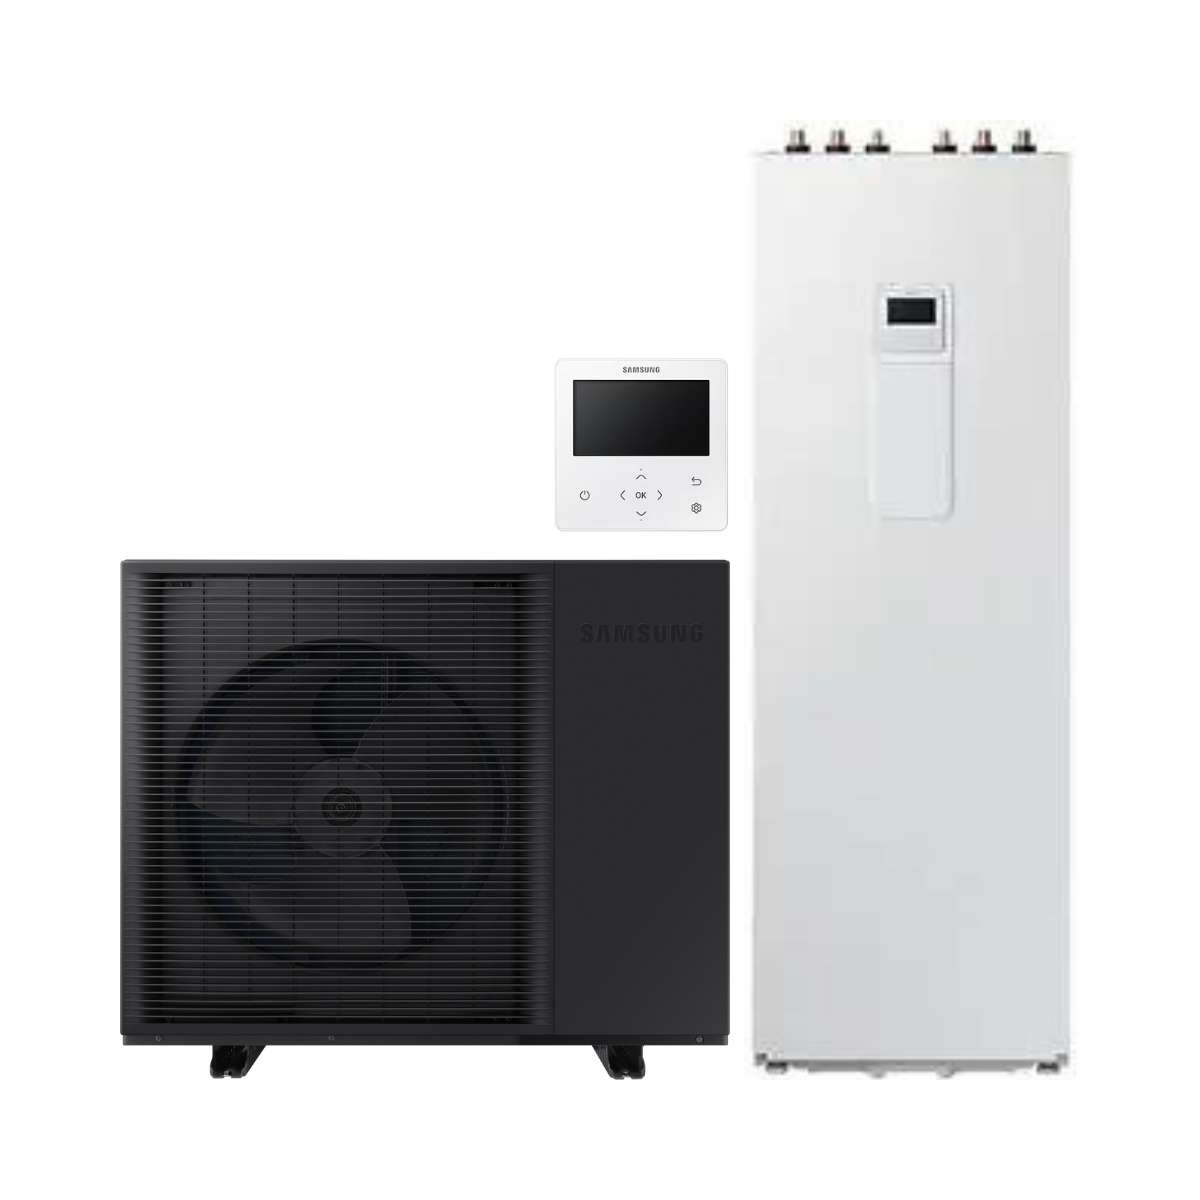 Set pompa di calore monoblocco Samsung EHS HT 8 kW + ClimateHub da 260 litri con riferimento KITSAMEHSHT8+260 del marchio SAMSUNG